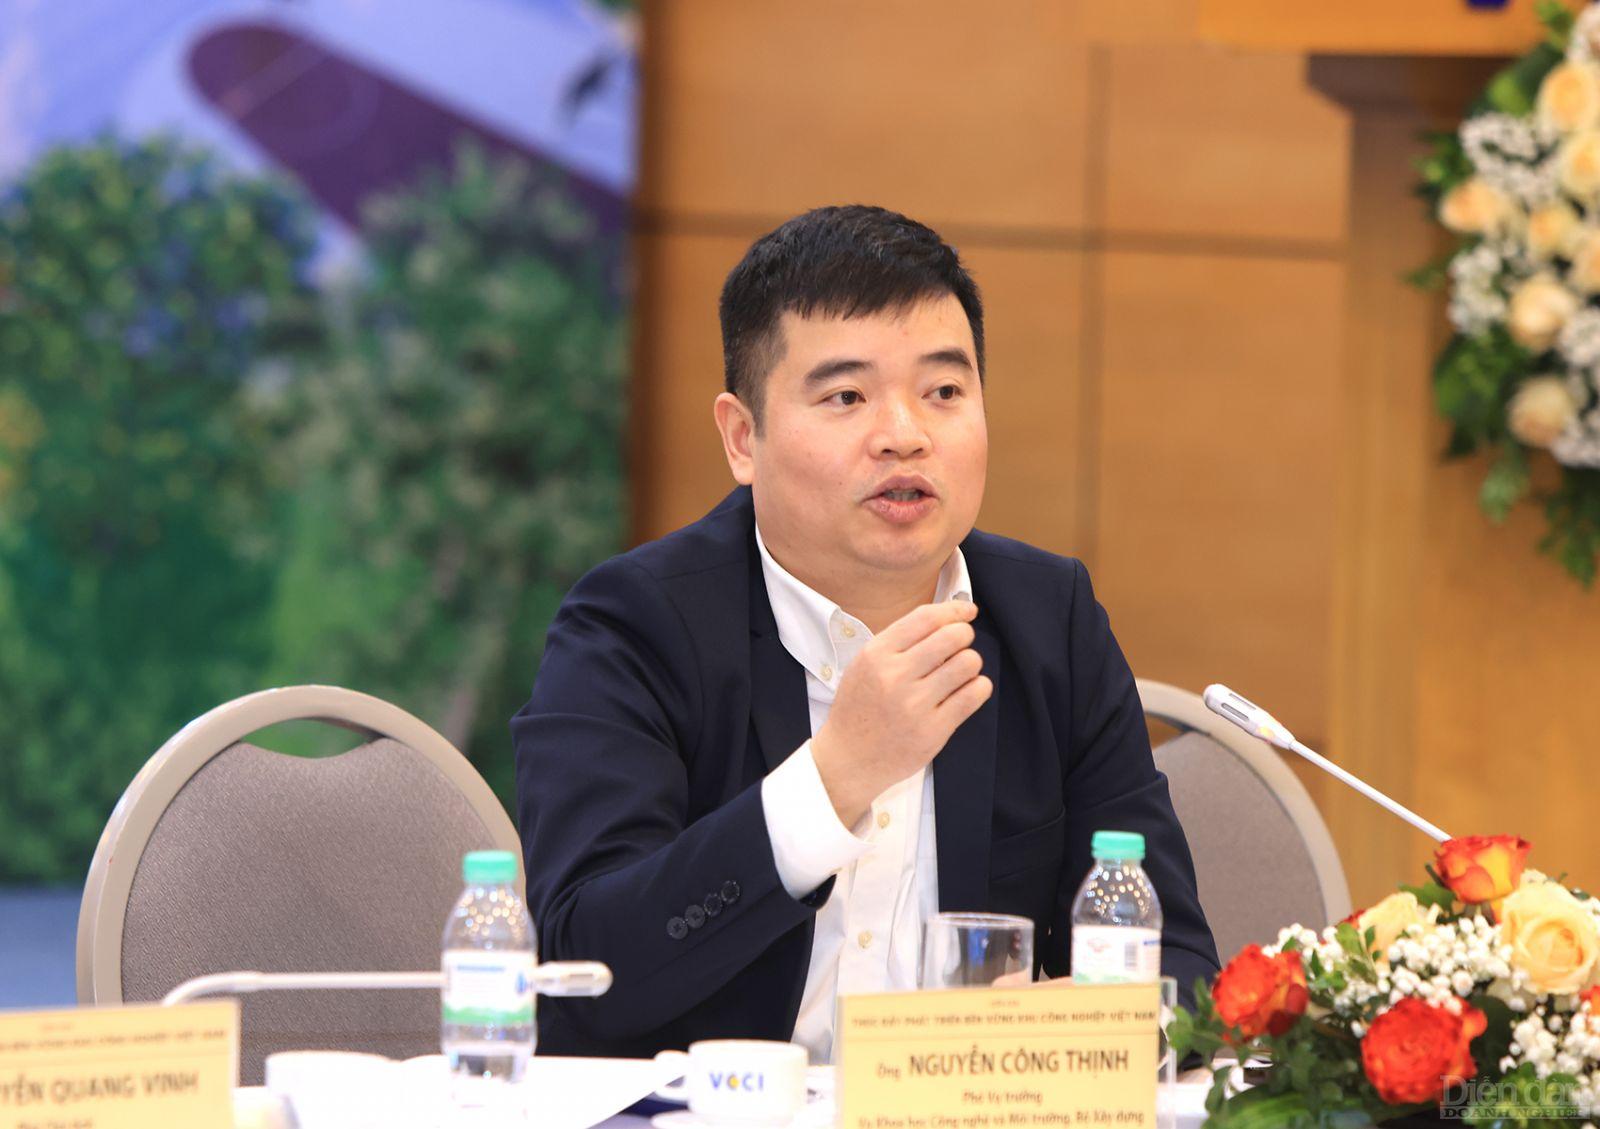 Ông Nguyễn Công Thịnh - Phó Vụ trưởng Vụ Khoa học Công nghệ và Môi trường, Bộ Xây dựng 